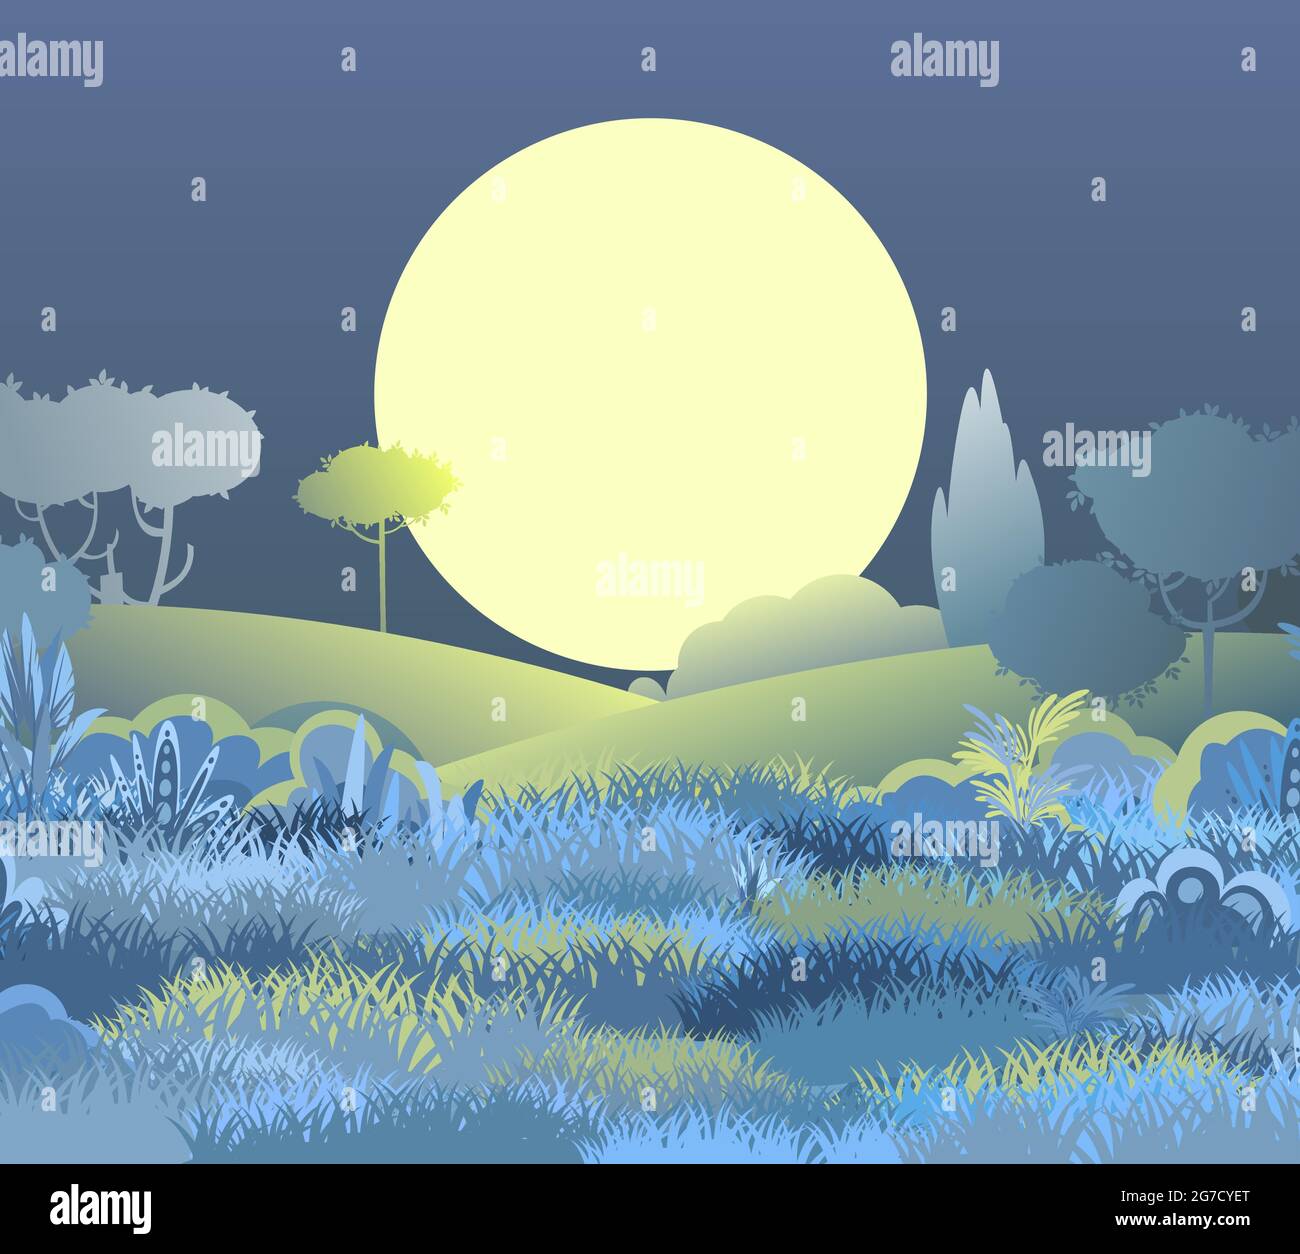 Nacht schöne ländliche Landschaft. Cartoon-Stil. Hügel mit Gras und dunklen Bäumen. Großer Mond und Mondschein. Saftige Wiesen. Flache Abbildung Stock Vektor